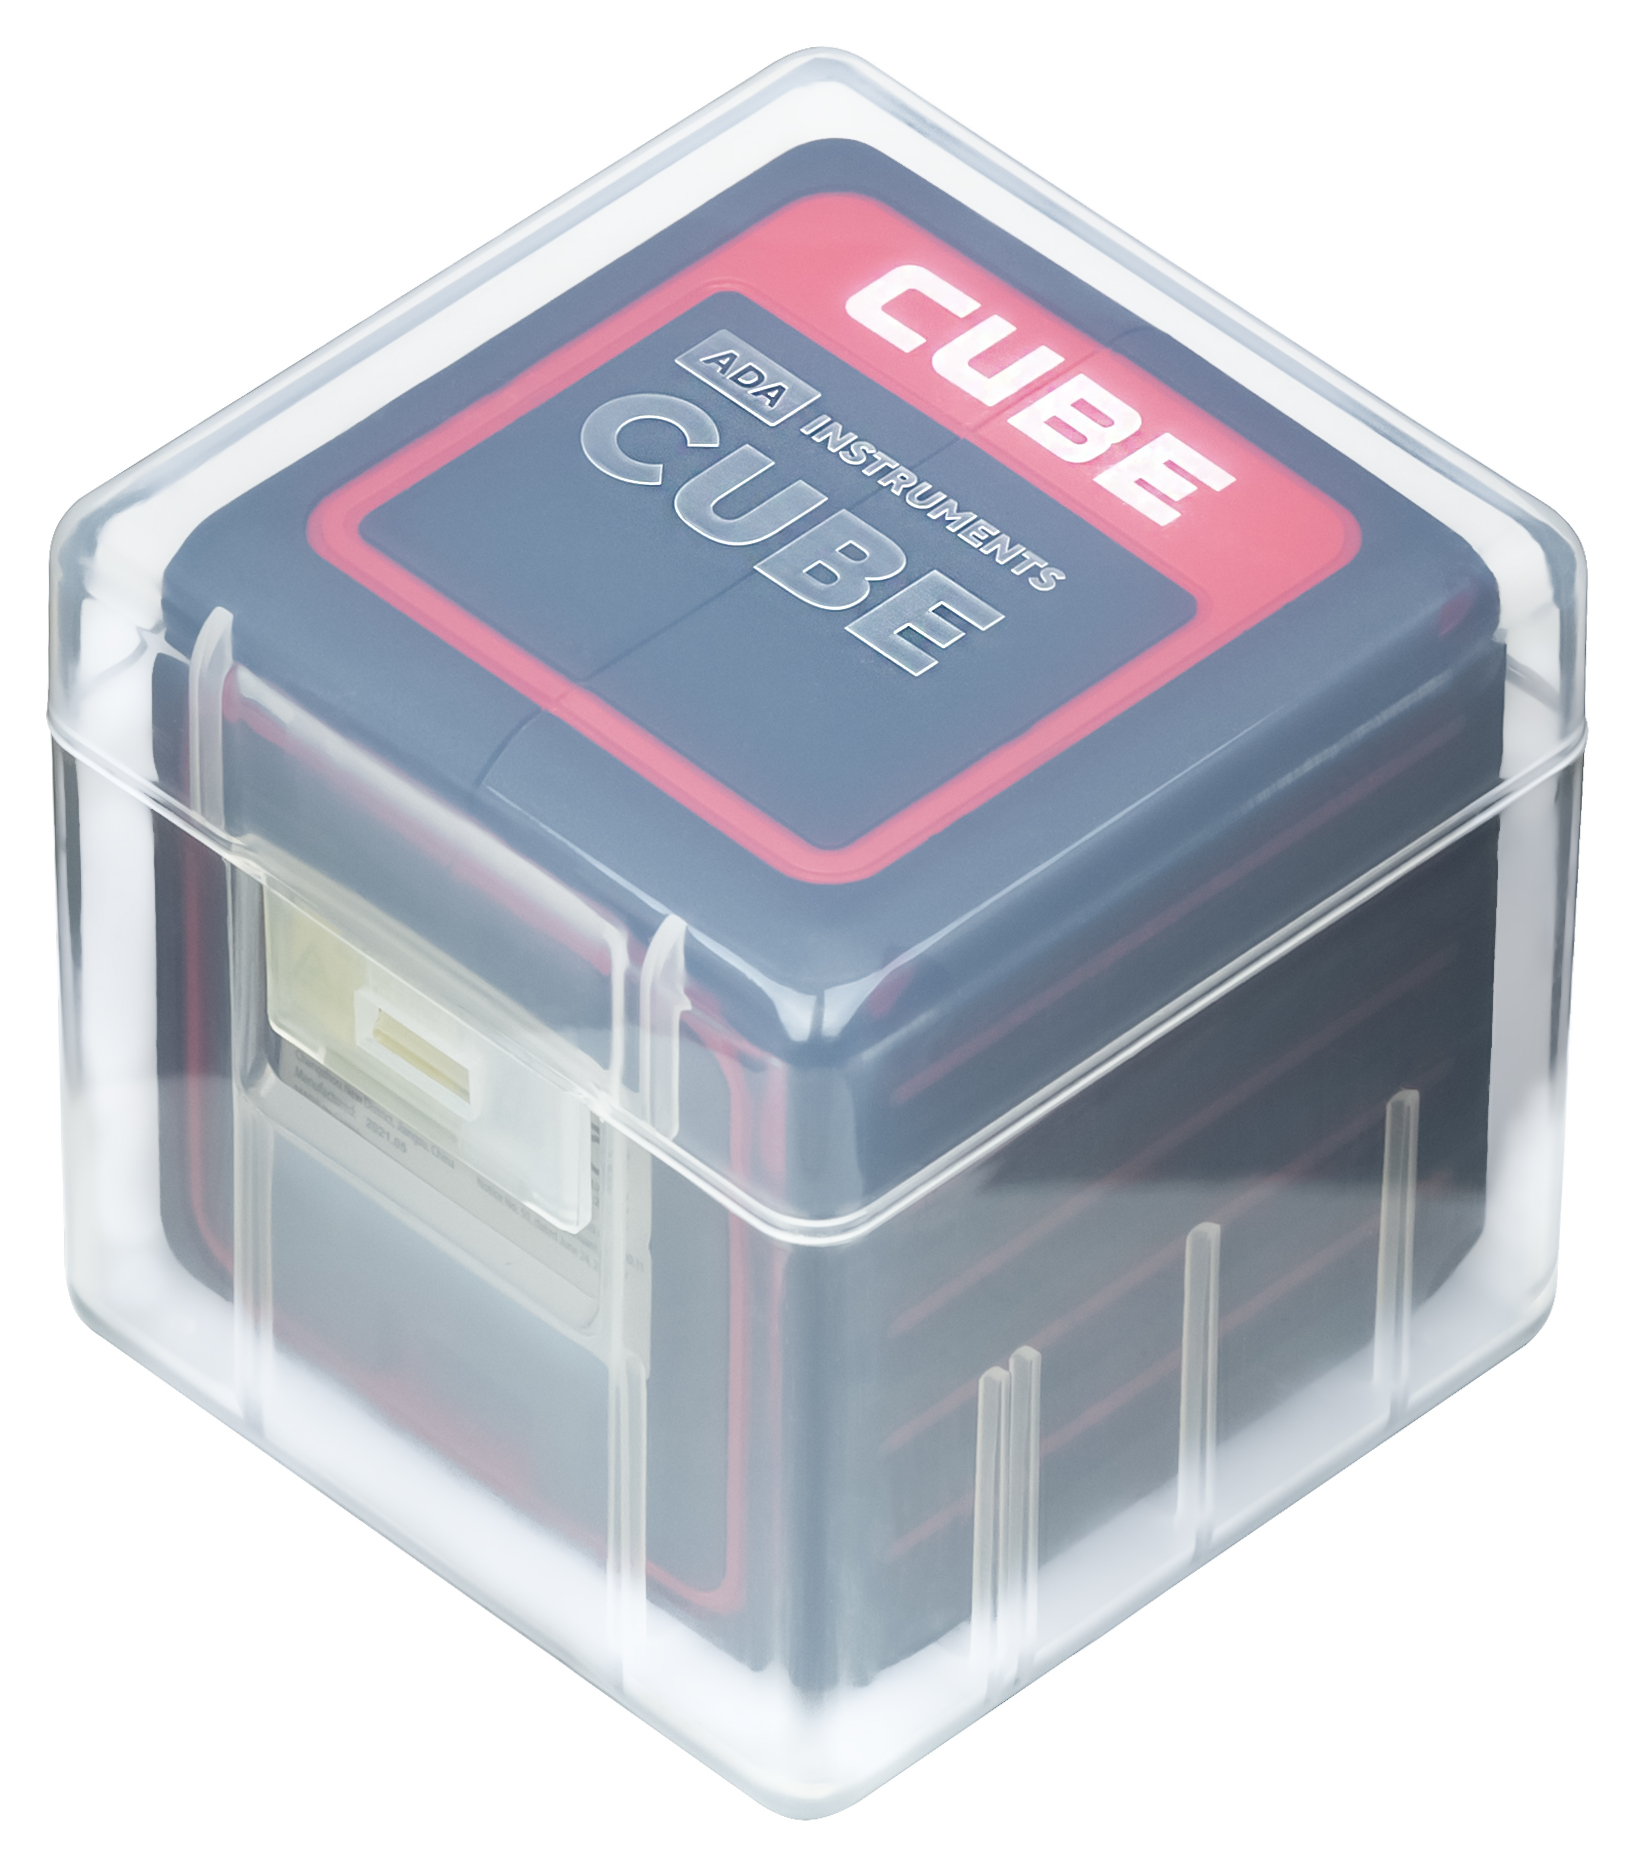 Лазерный уровень ada cube basic edition. Лазерный уровень ada. Защитное стекло для лазерного уровня ada.